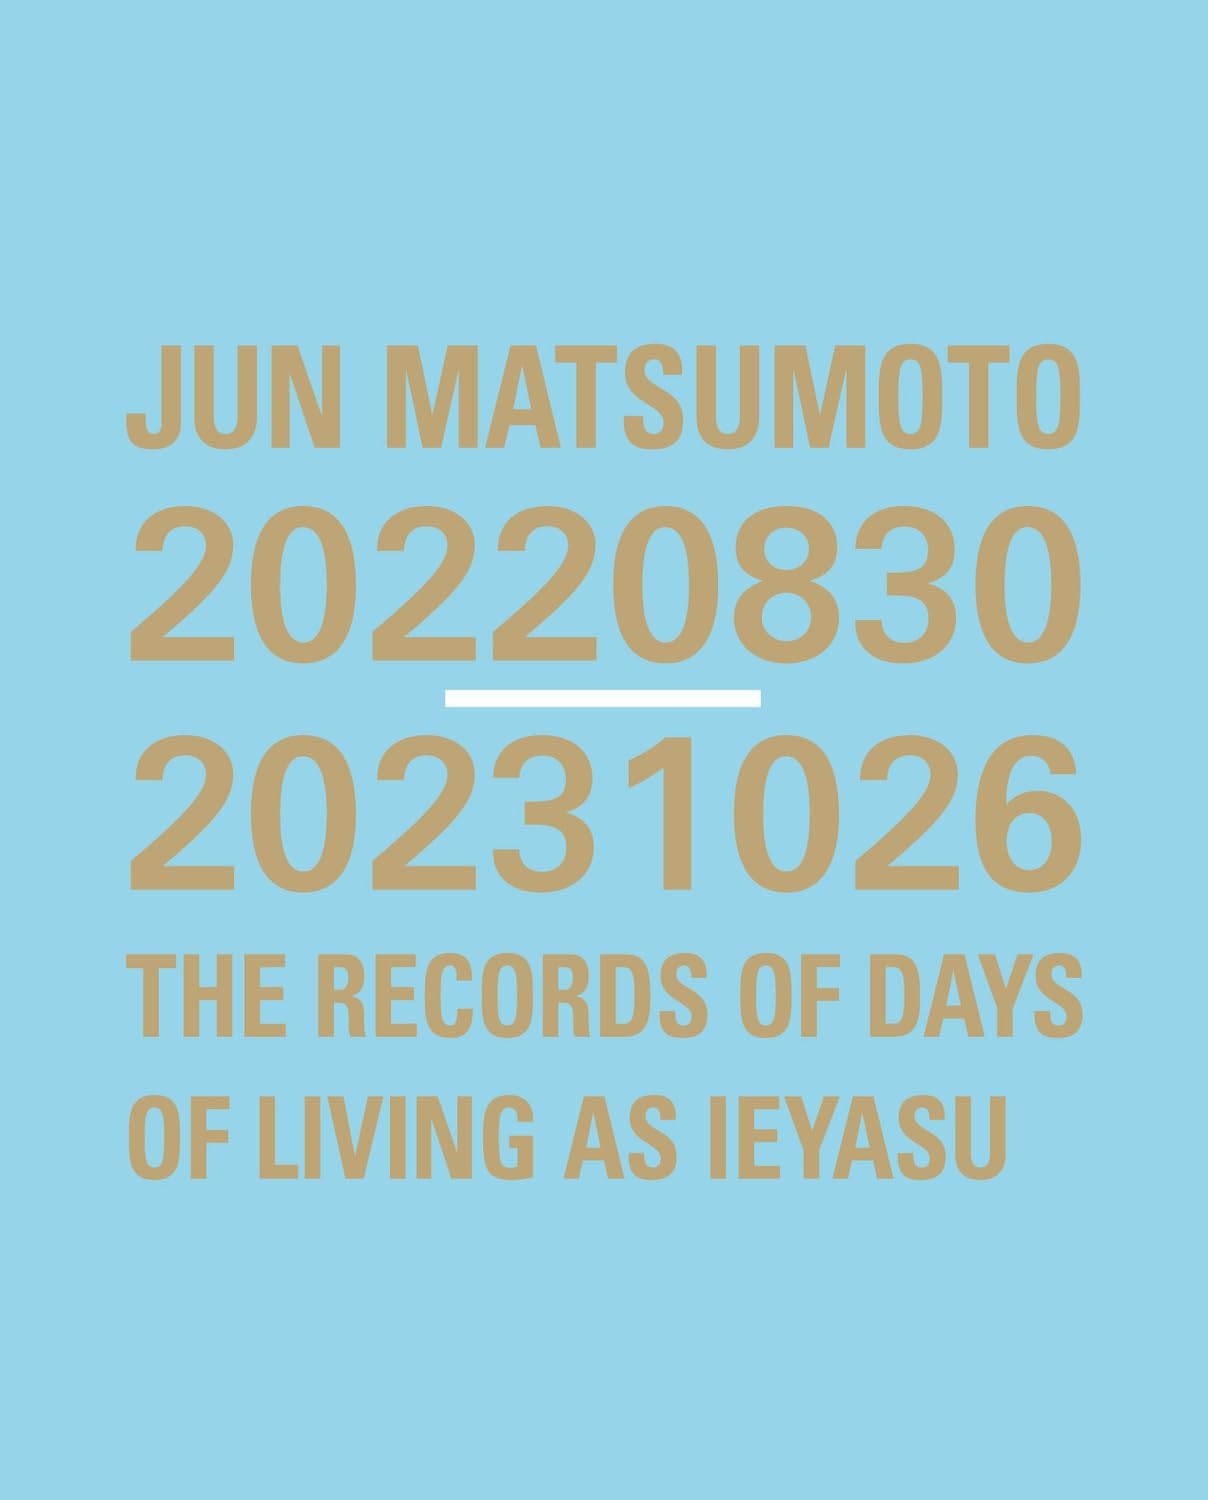 JUN MATSUMOTO 20220830-20231026 THE RECORDS OF DAYS OF LIVING AS IEYASU